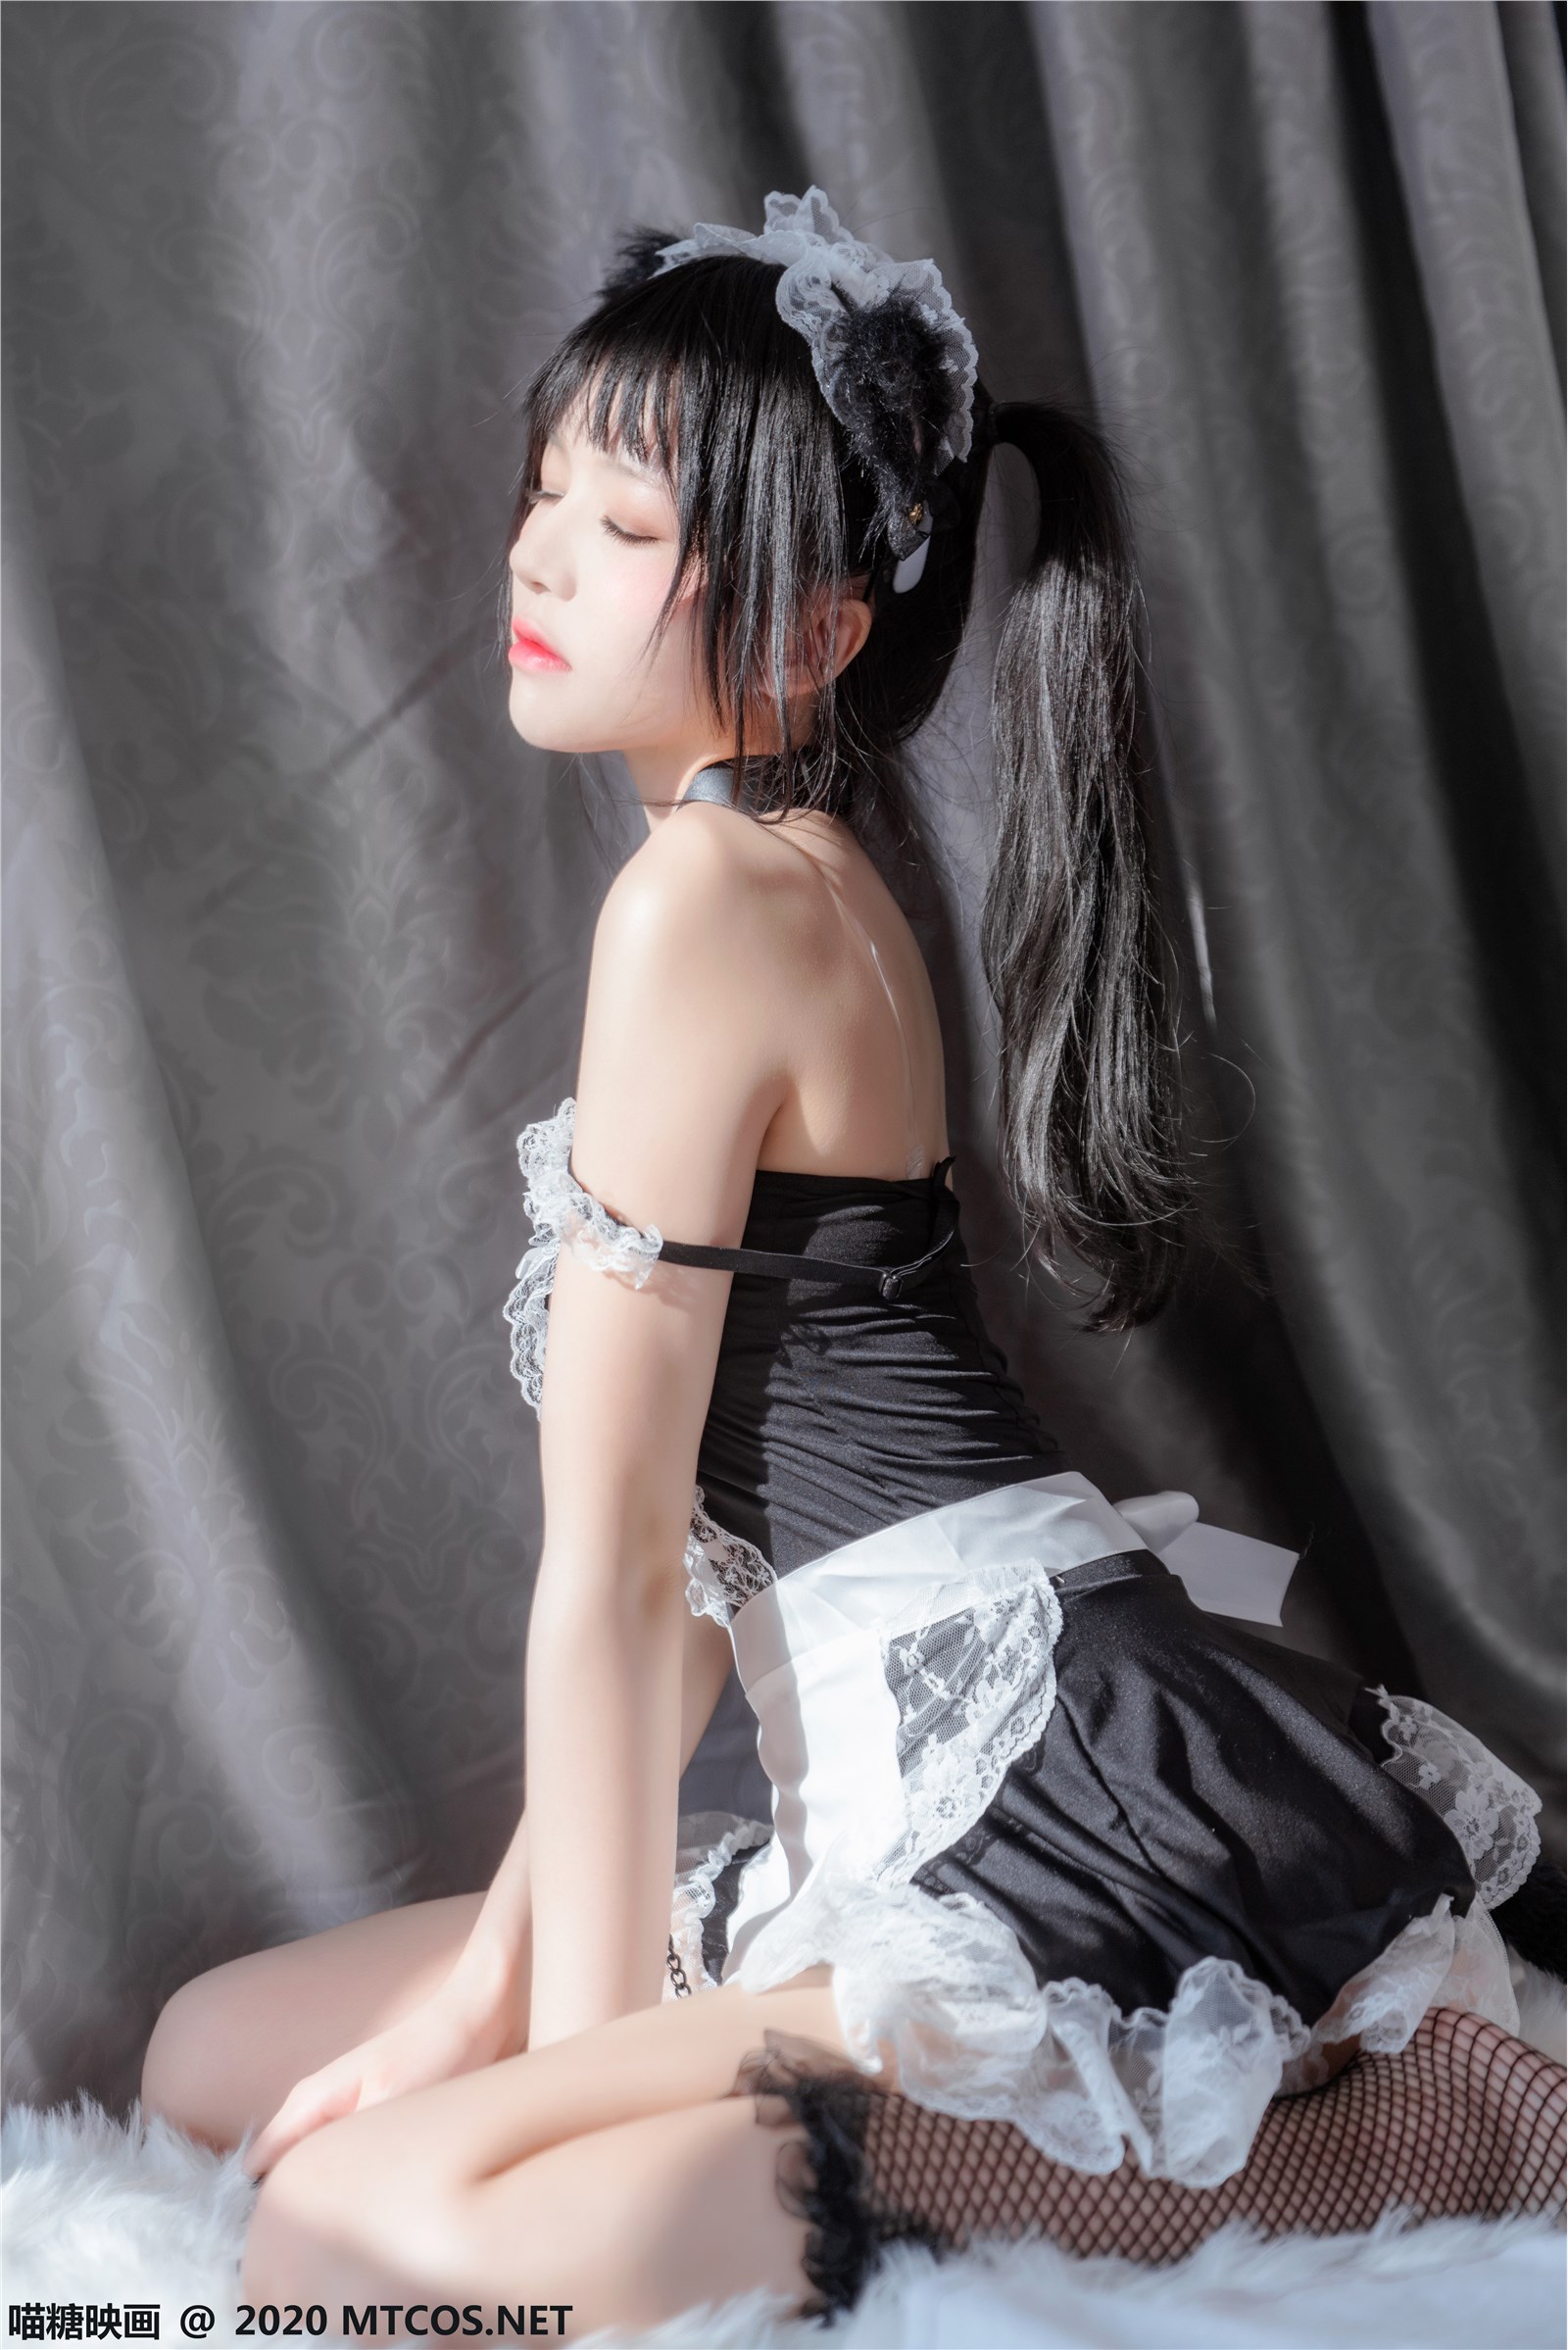 The black cat maid(7)